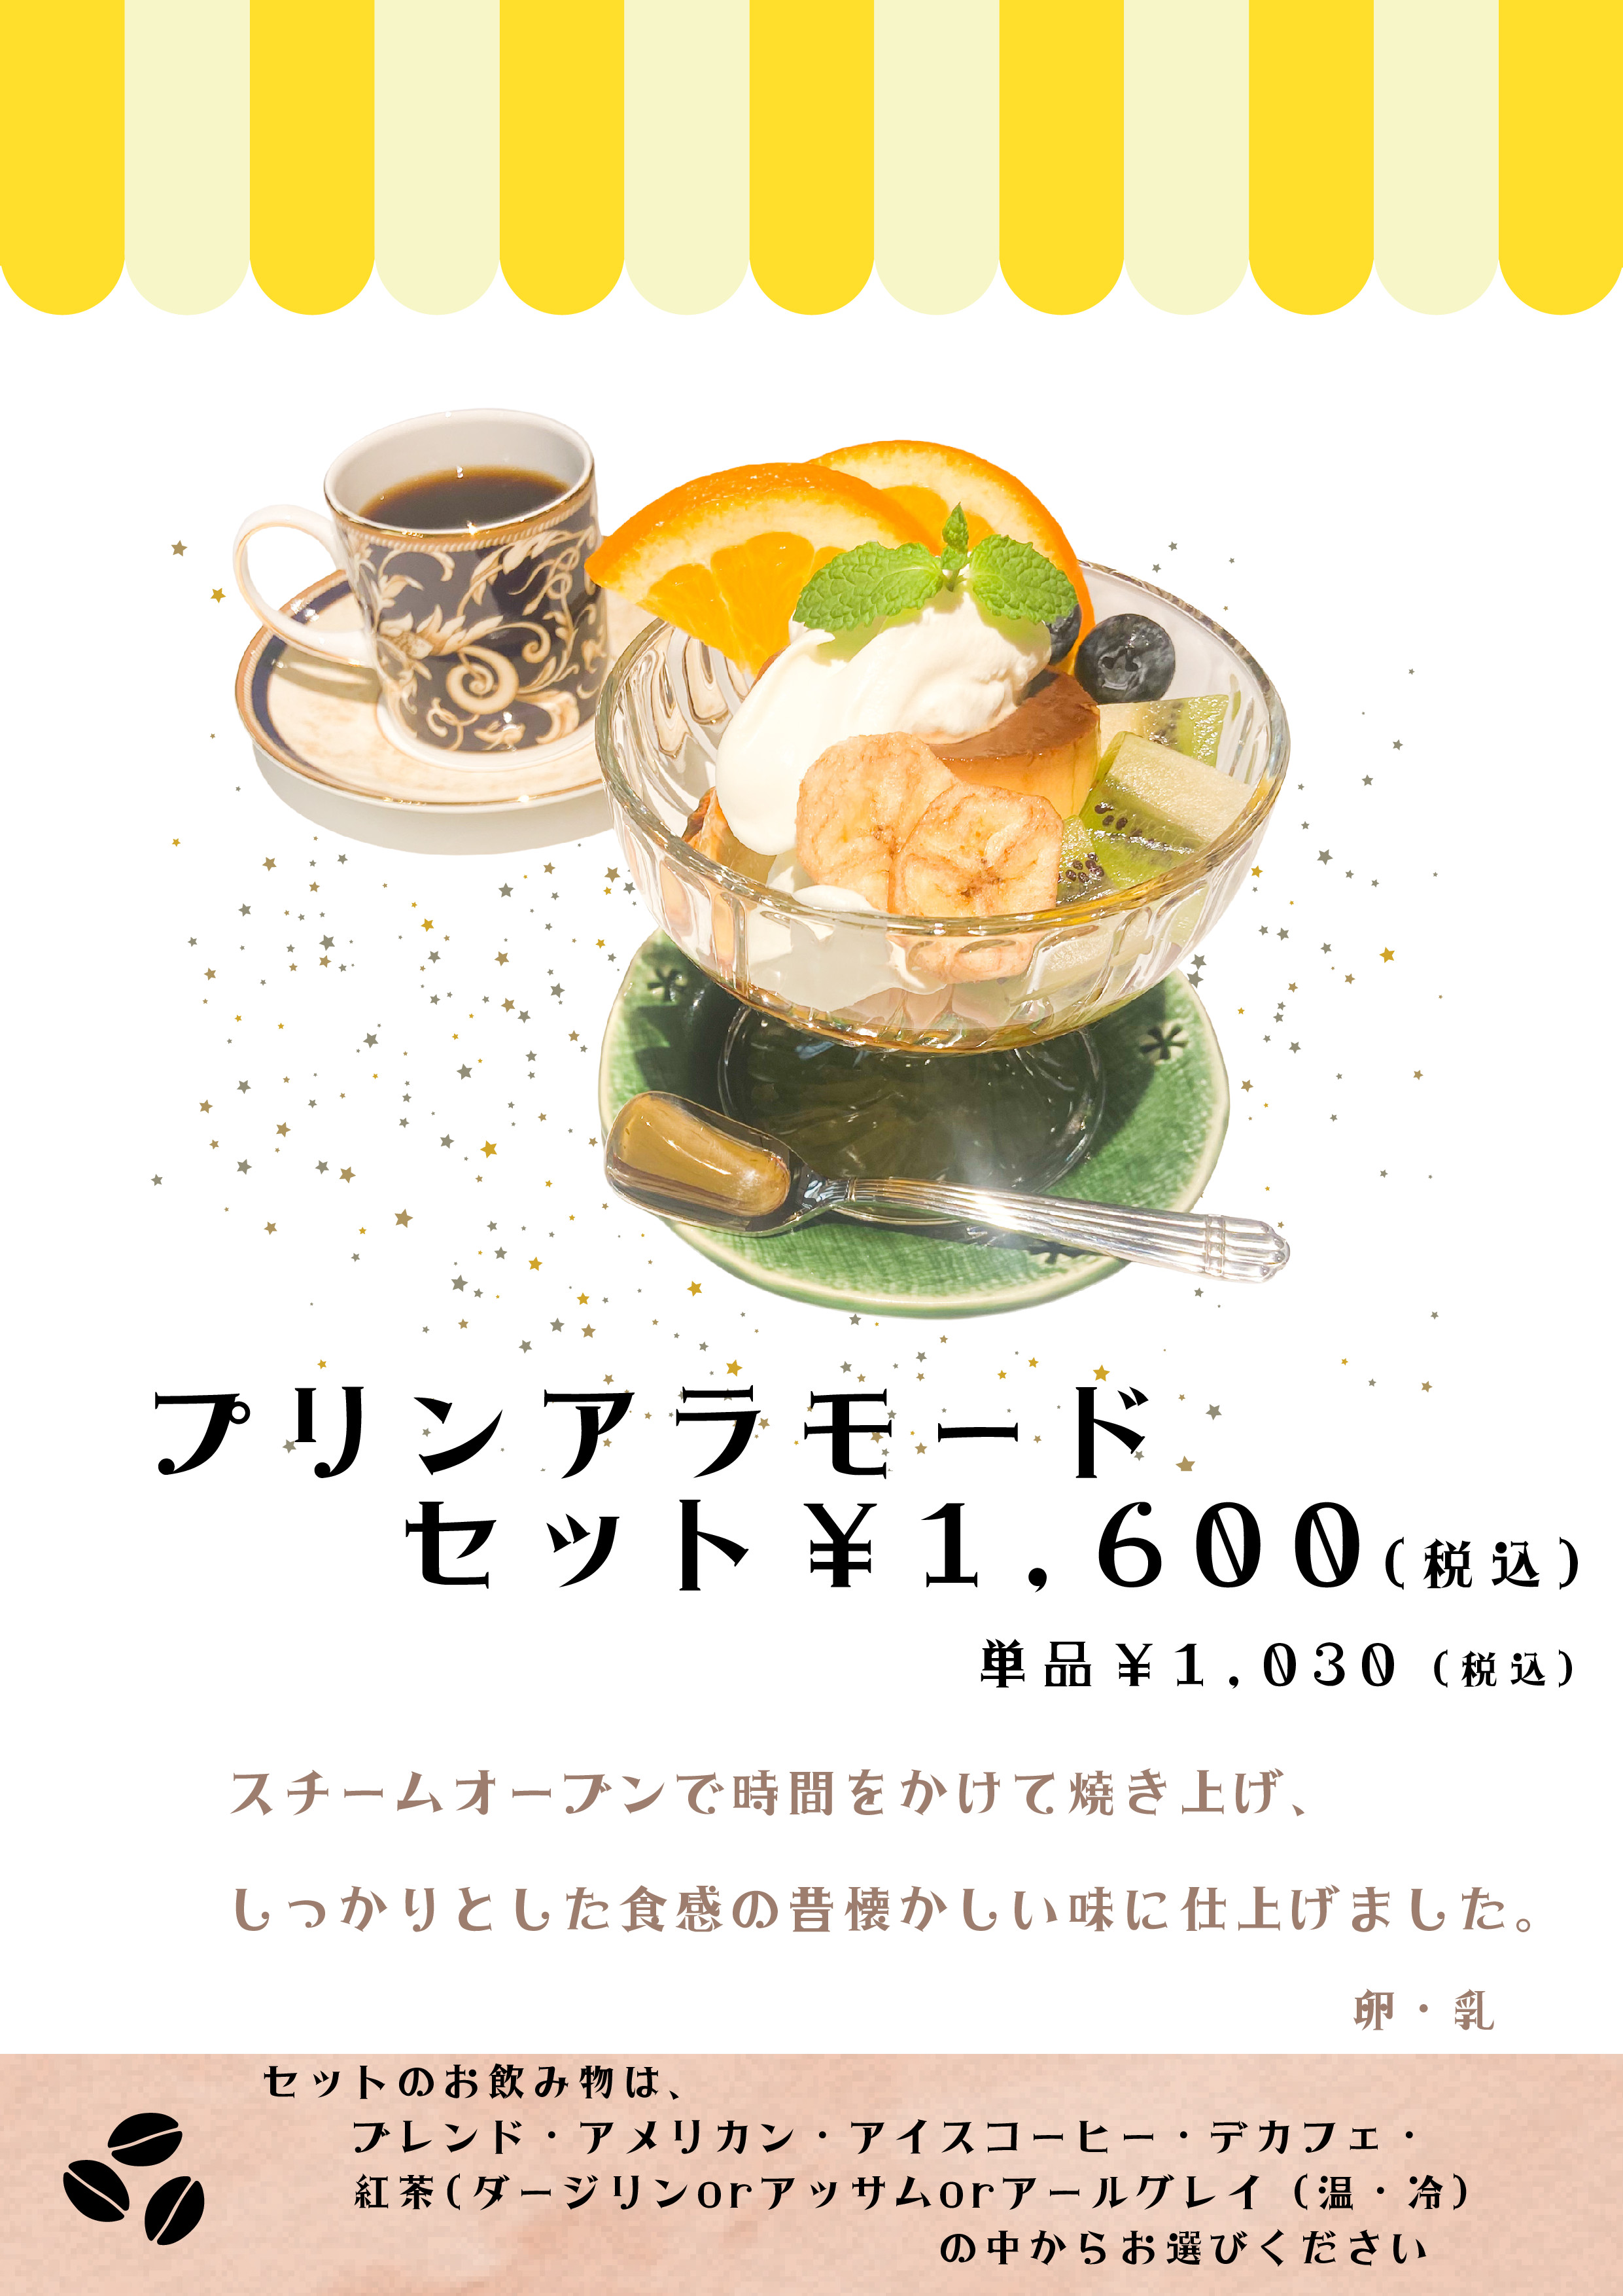 "Pudding à la mode set" tax-included 1,600 yen, single item 1,030 yen